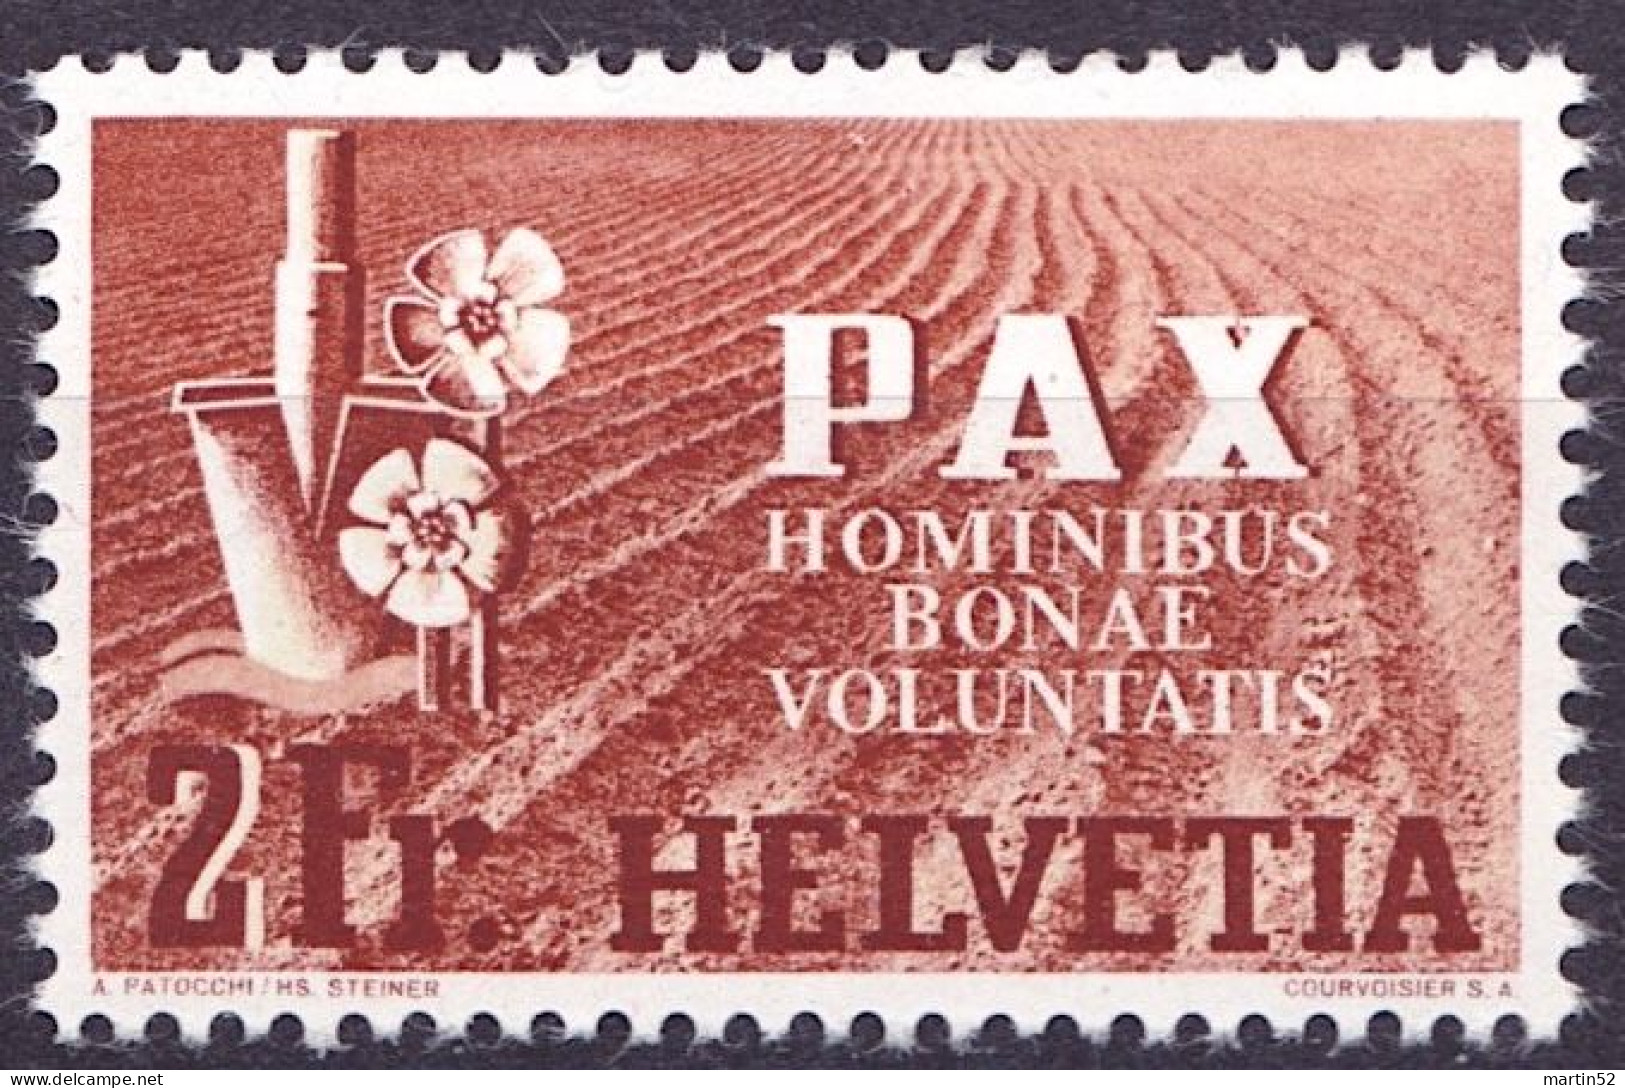 Schweiz Suisse PAX 1945: Feld+Blumen / Champ & Fleurs  (2 Fr) Zu 271 Mi 456 Yv 414 ** Postfrisch MNH (Zu CHF 60.00) - Neufs